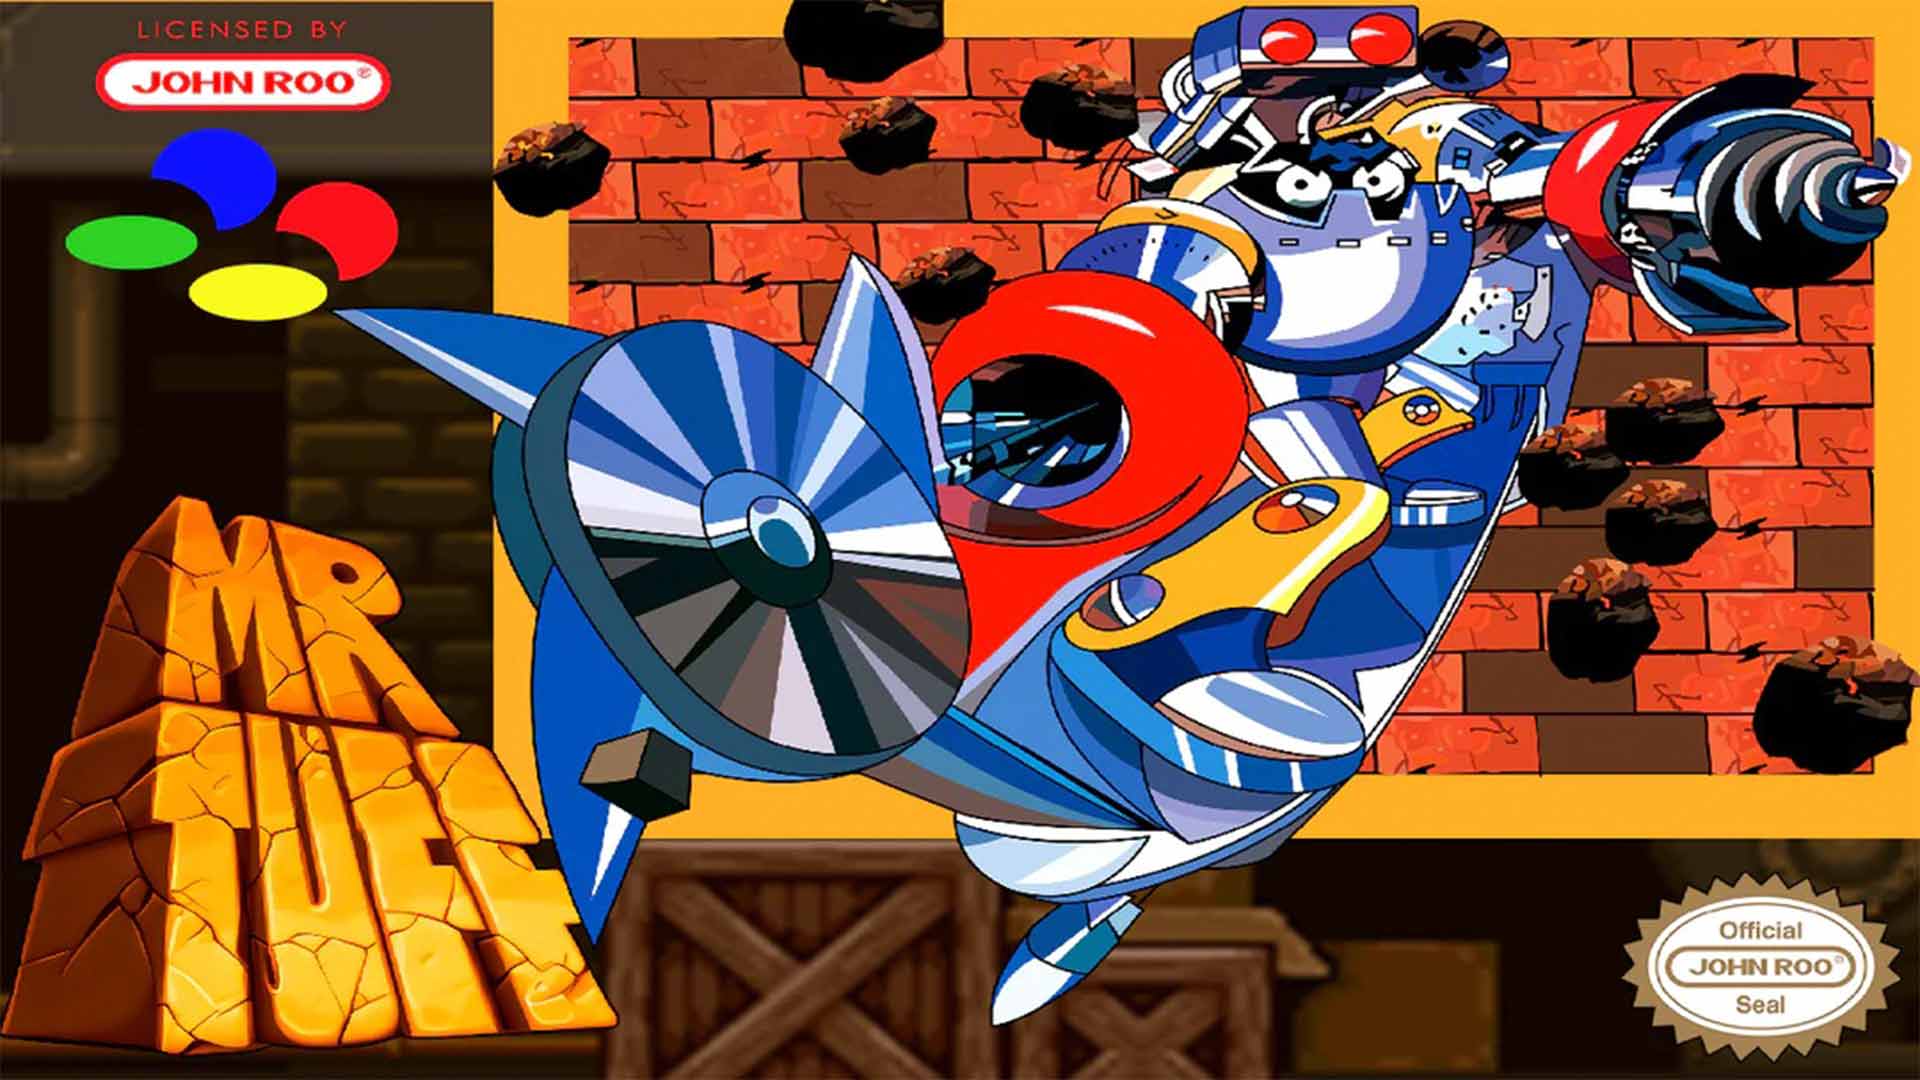 Neues Game für SNES: Mr. Tuff erscheint mit 28 Jahren Verspätung